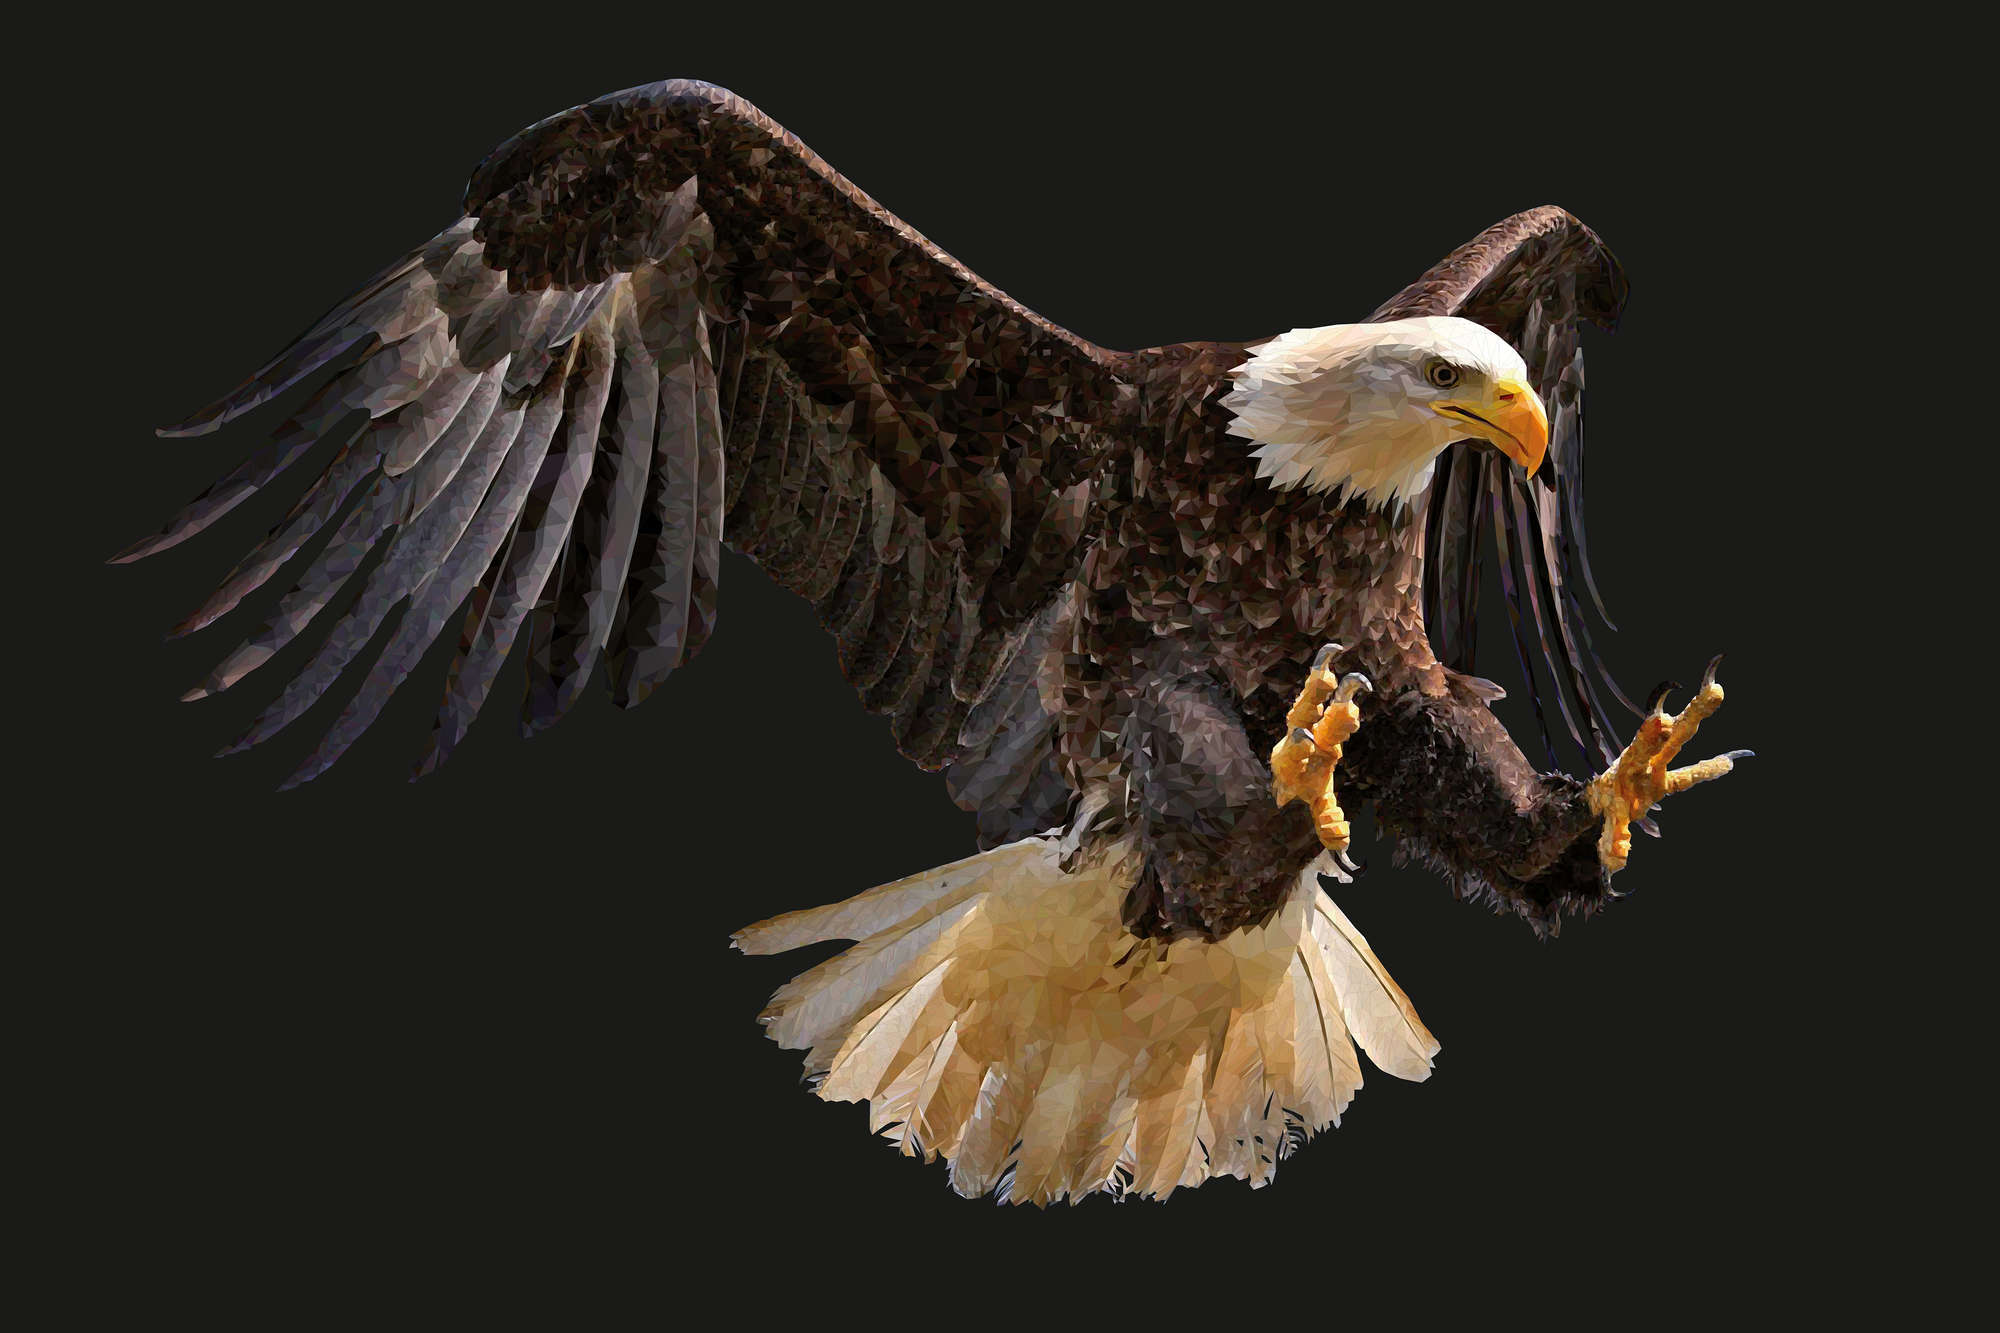             Papel pintado gráfico con motivo de águila sobre vellón liso de primera calidad
        